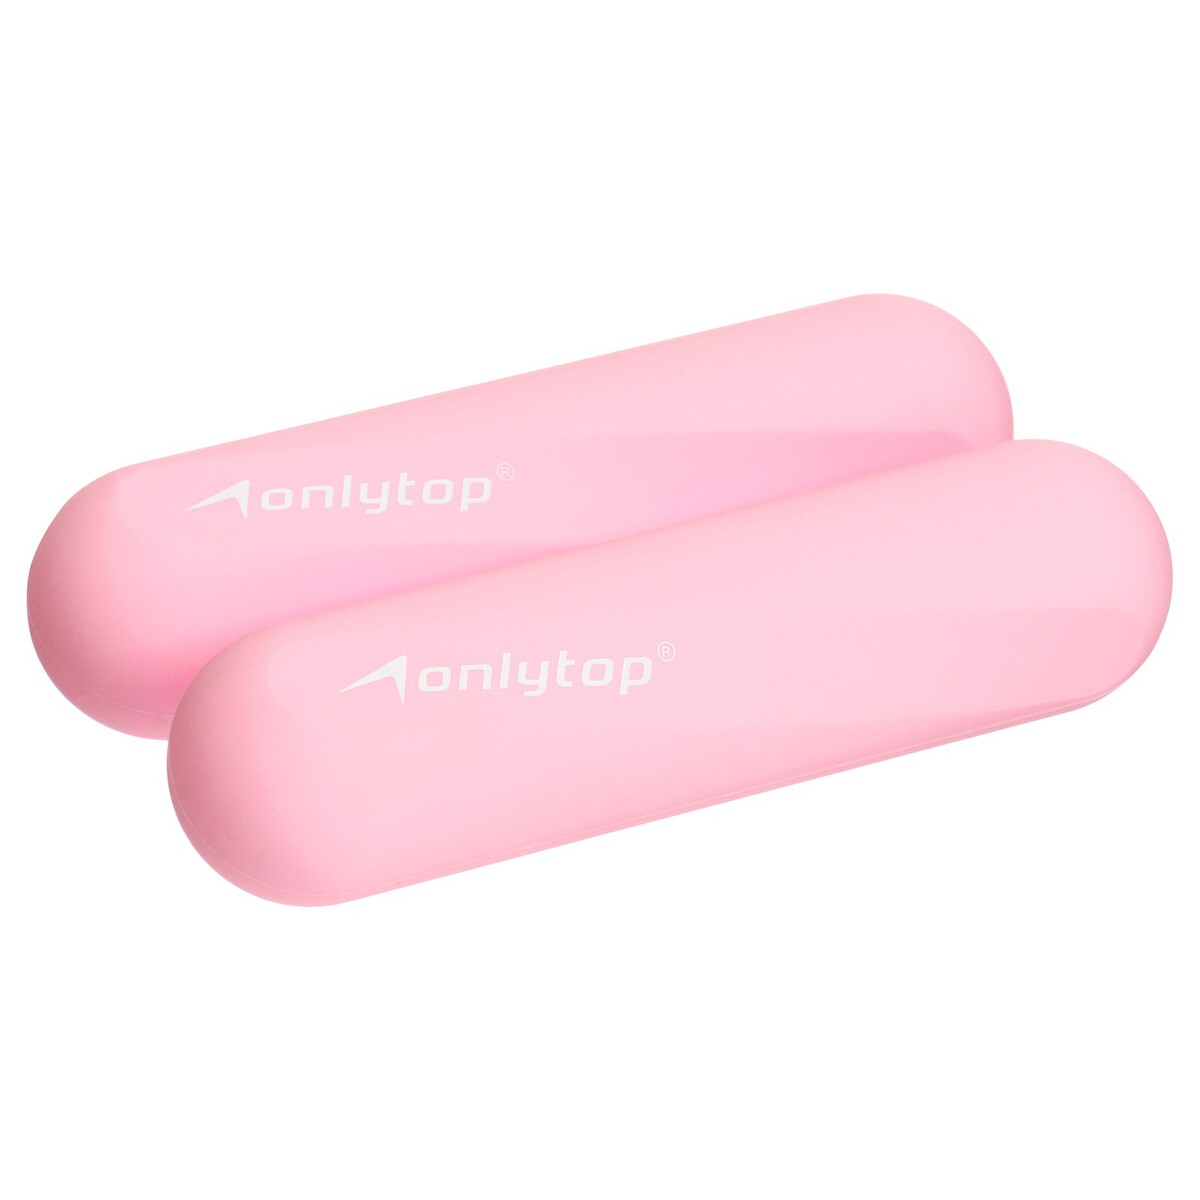 Гантели onlytop для универсального отягощения, 2 шт., 0,5 кг, цвет розовый гантели в уретане 16 кг live pro premium urethane dumbbells lp8000 16